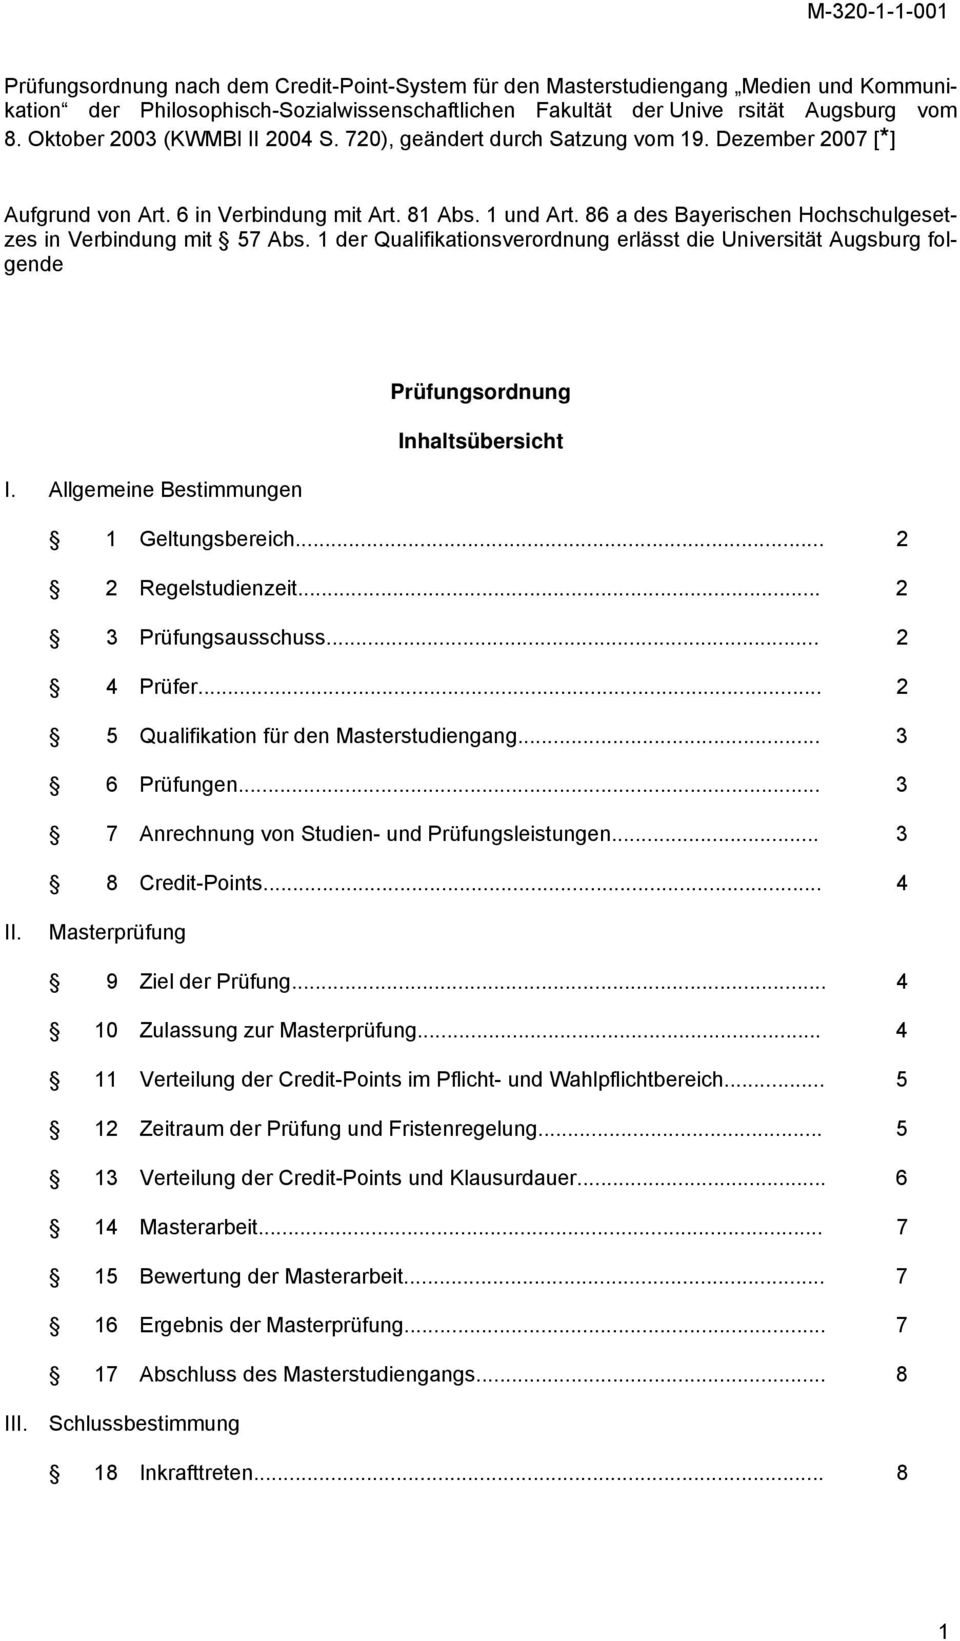 86 a des Bayerischen Hochschulgesetzes in Verbindung mit 57 Abs. 1 der Qualifikationsverordnung erlässt die Universität Augsburg folgende Prüfungsordnung Inhaltsübersicht I.